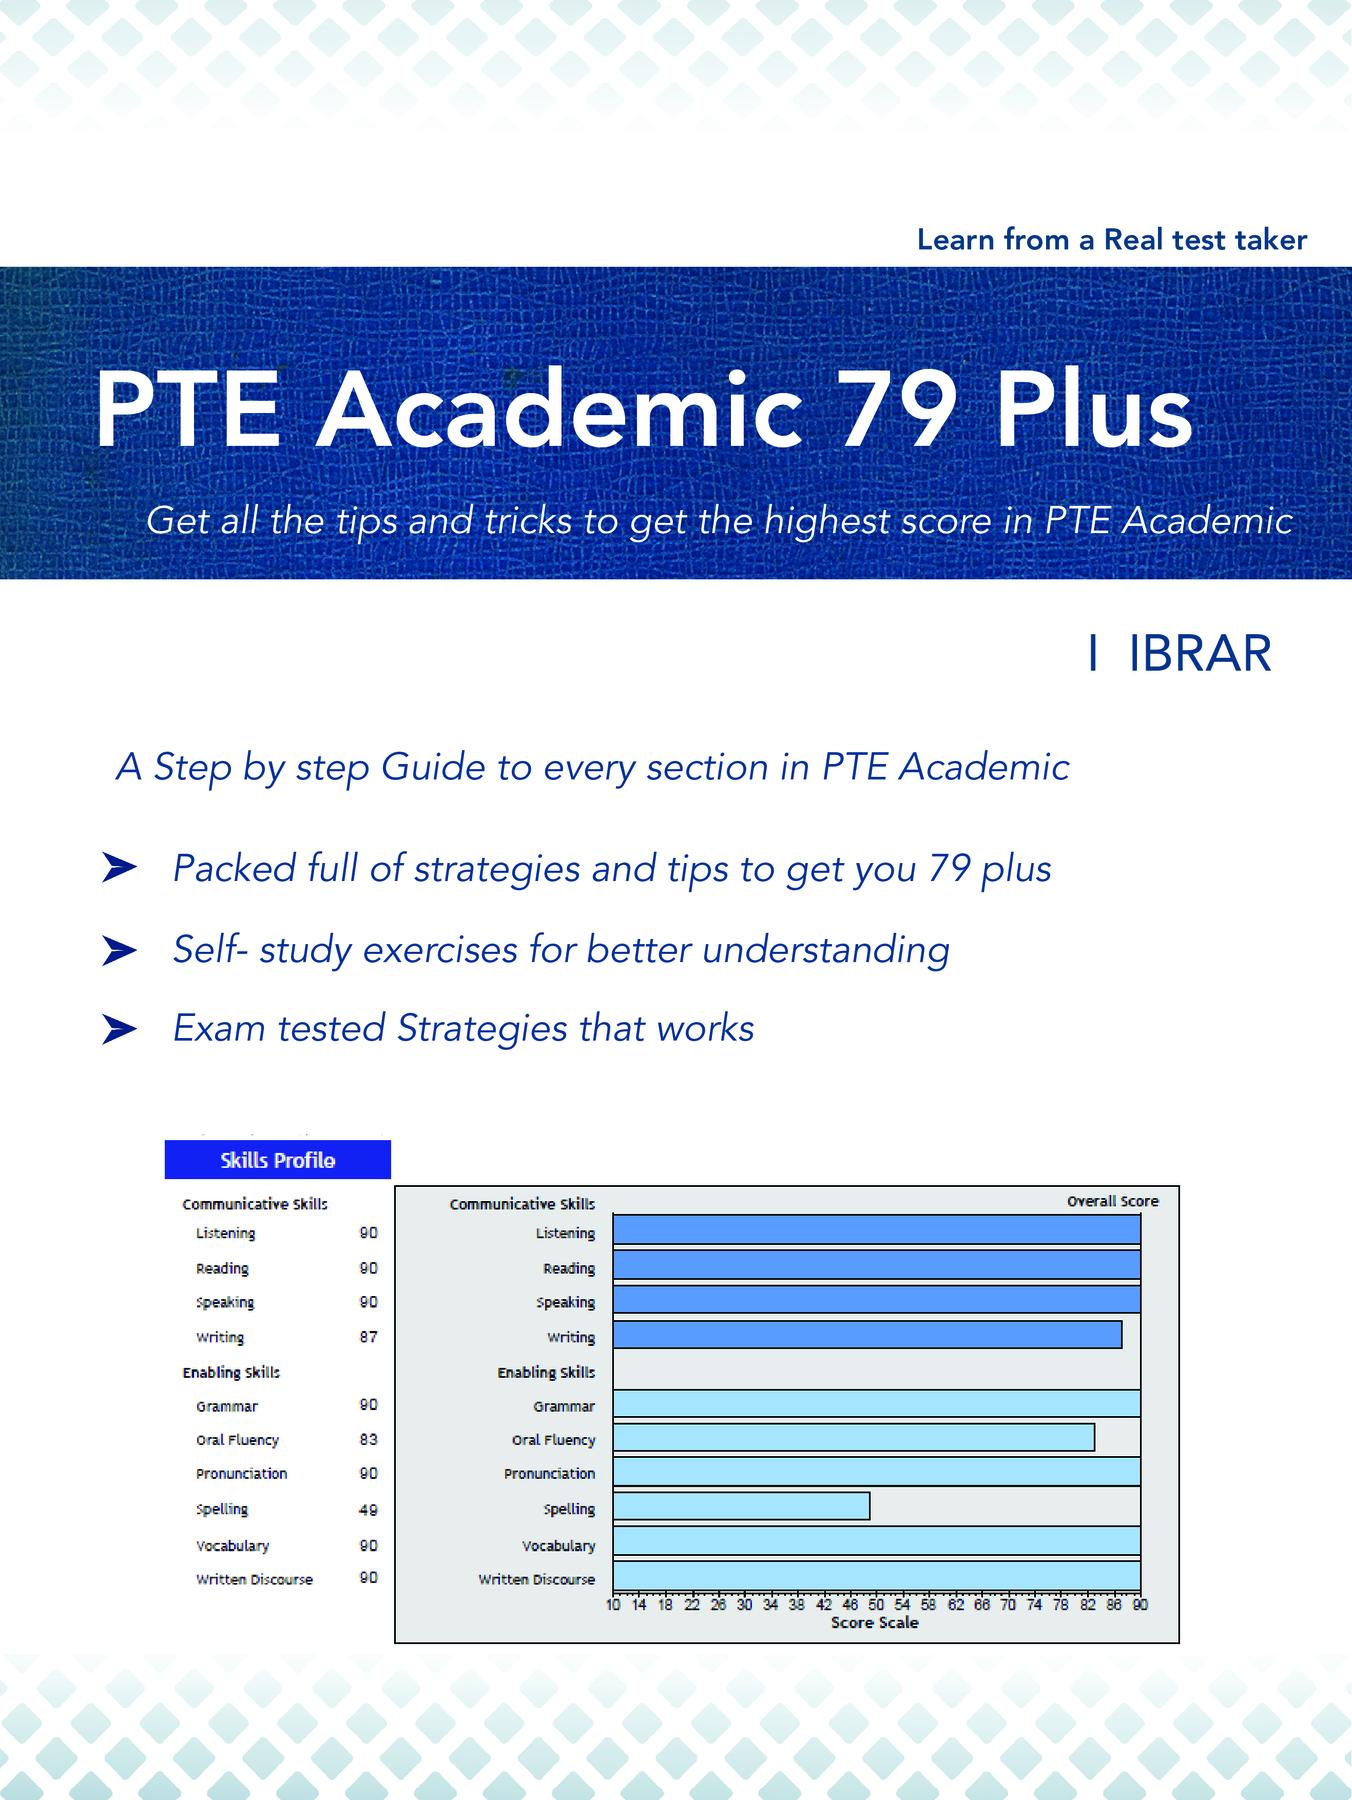 PTE Academic 79 Plus